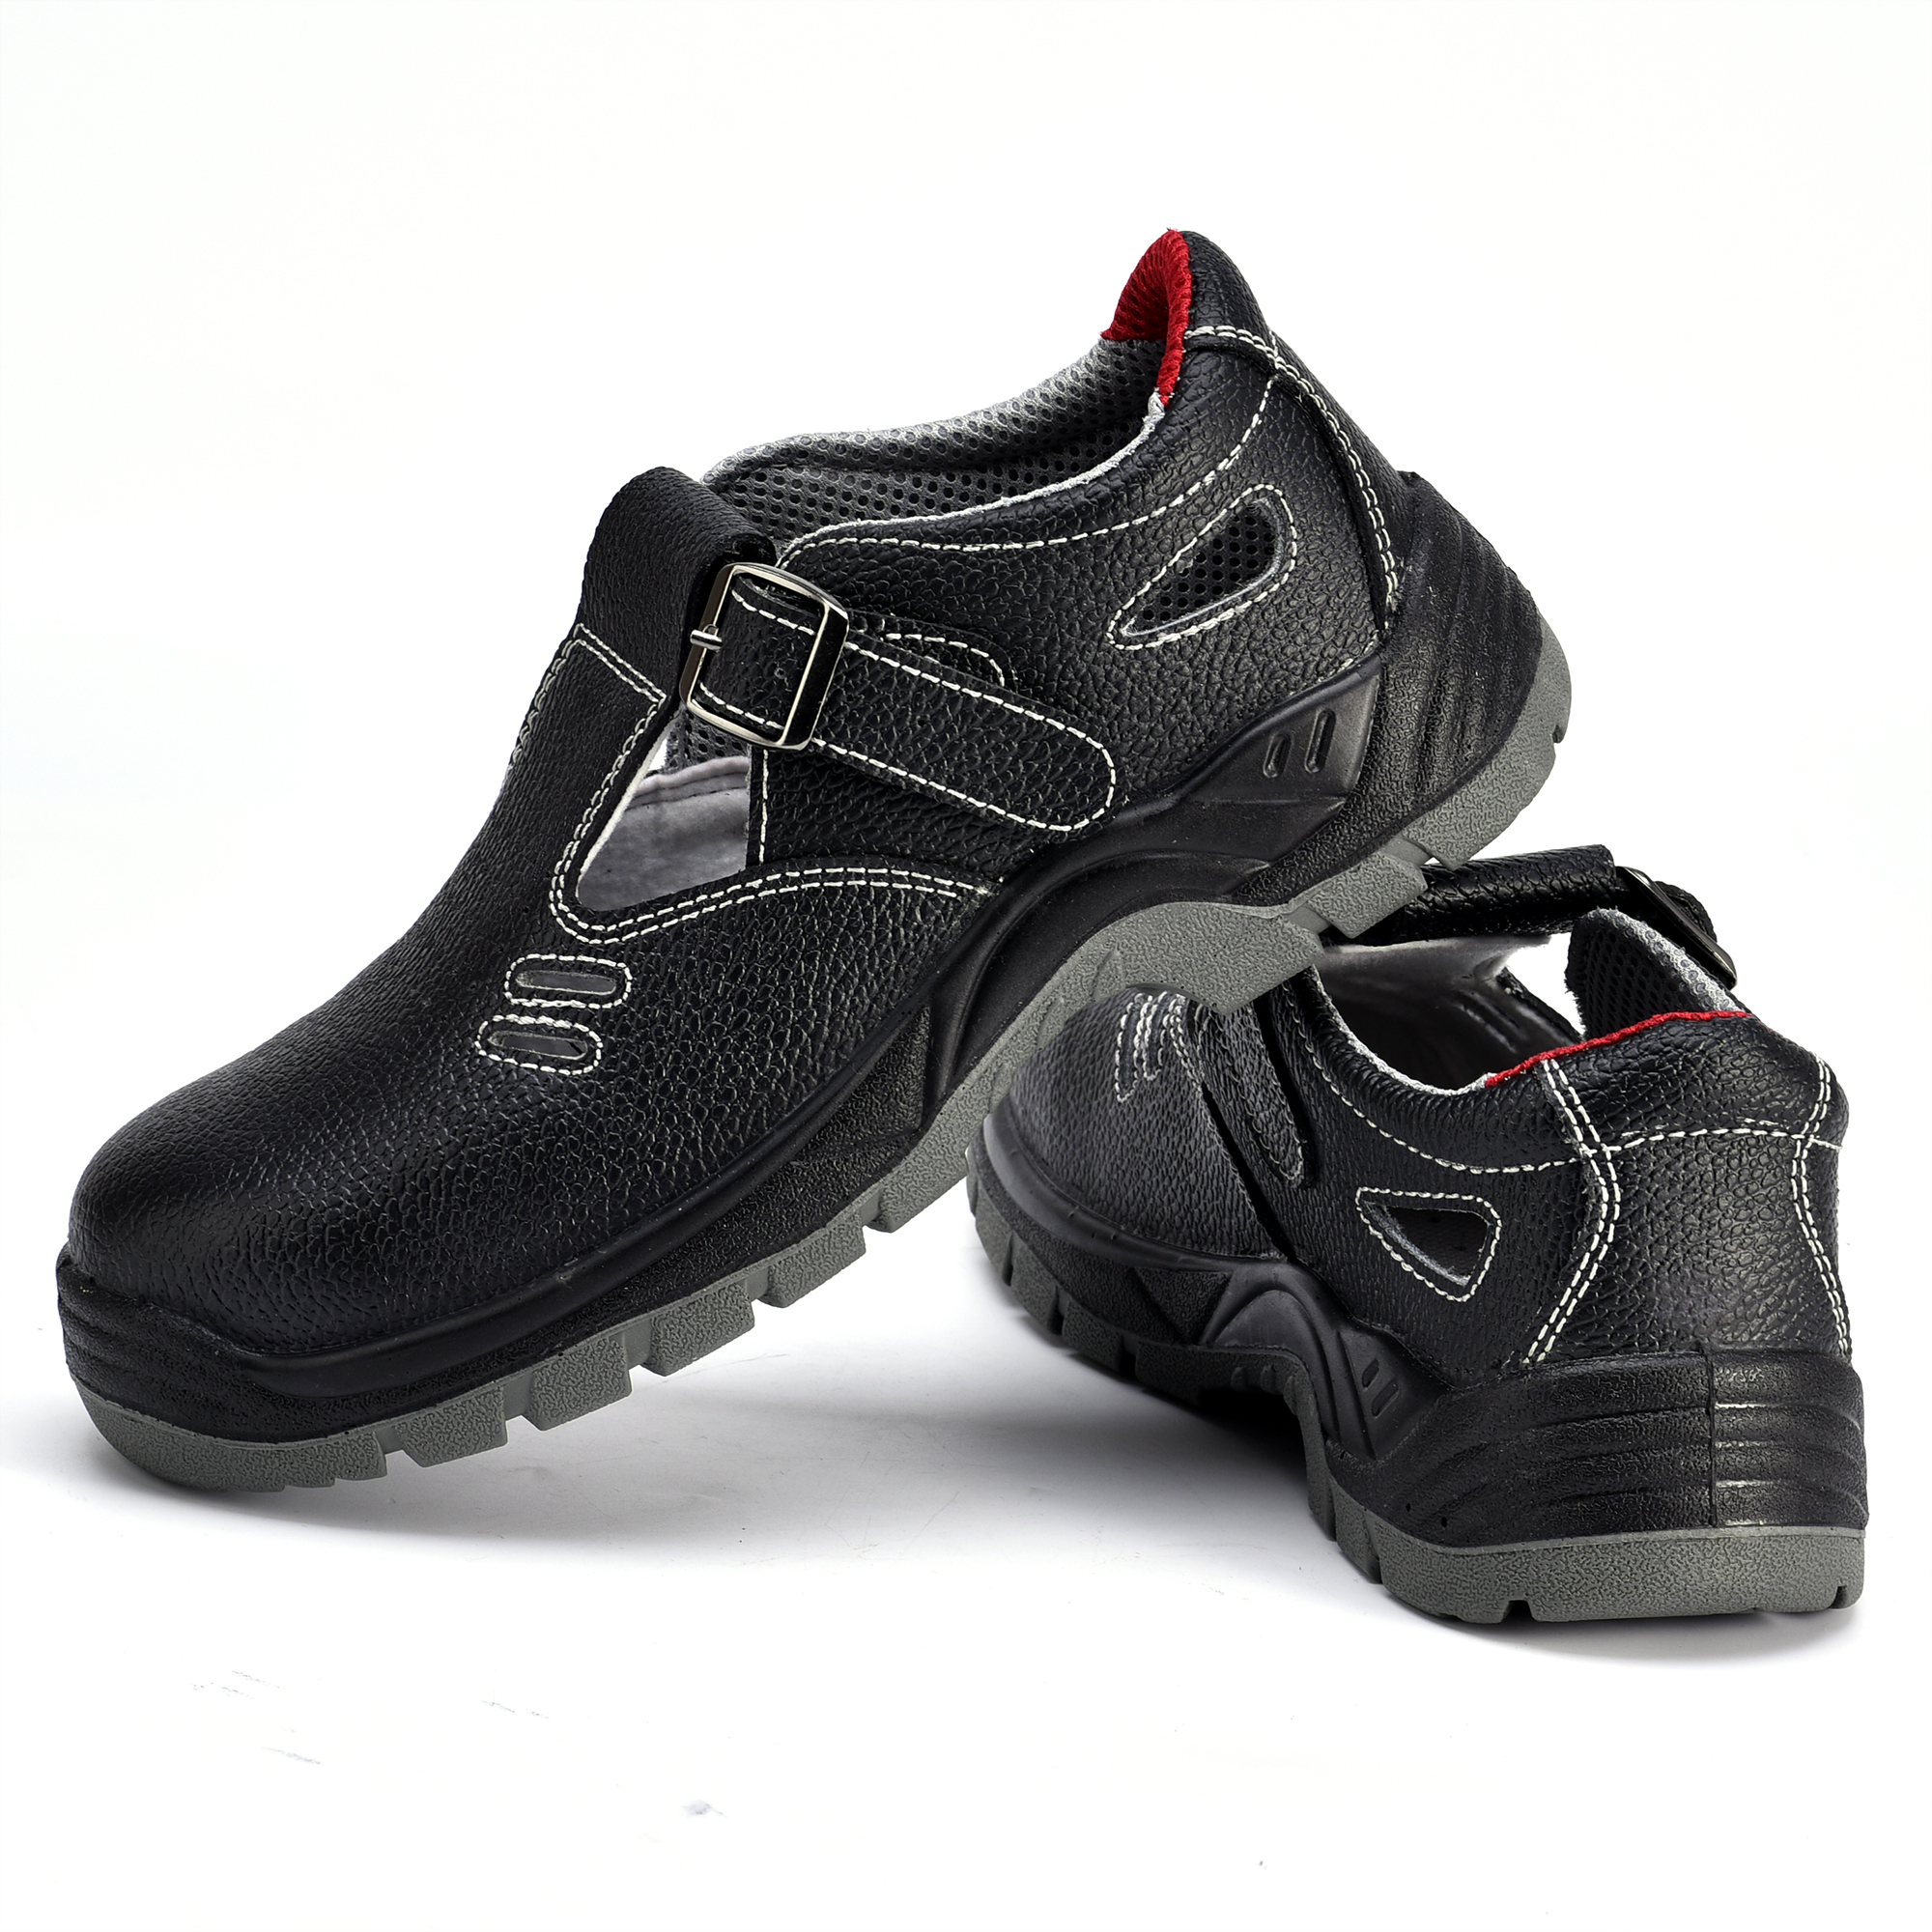 Zuecos de zapatos de seguridad de alta calidad L-7216